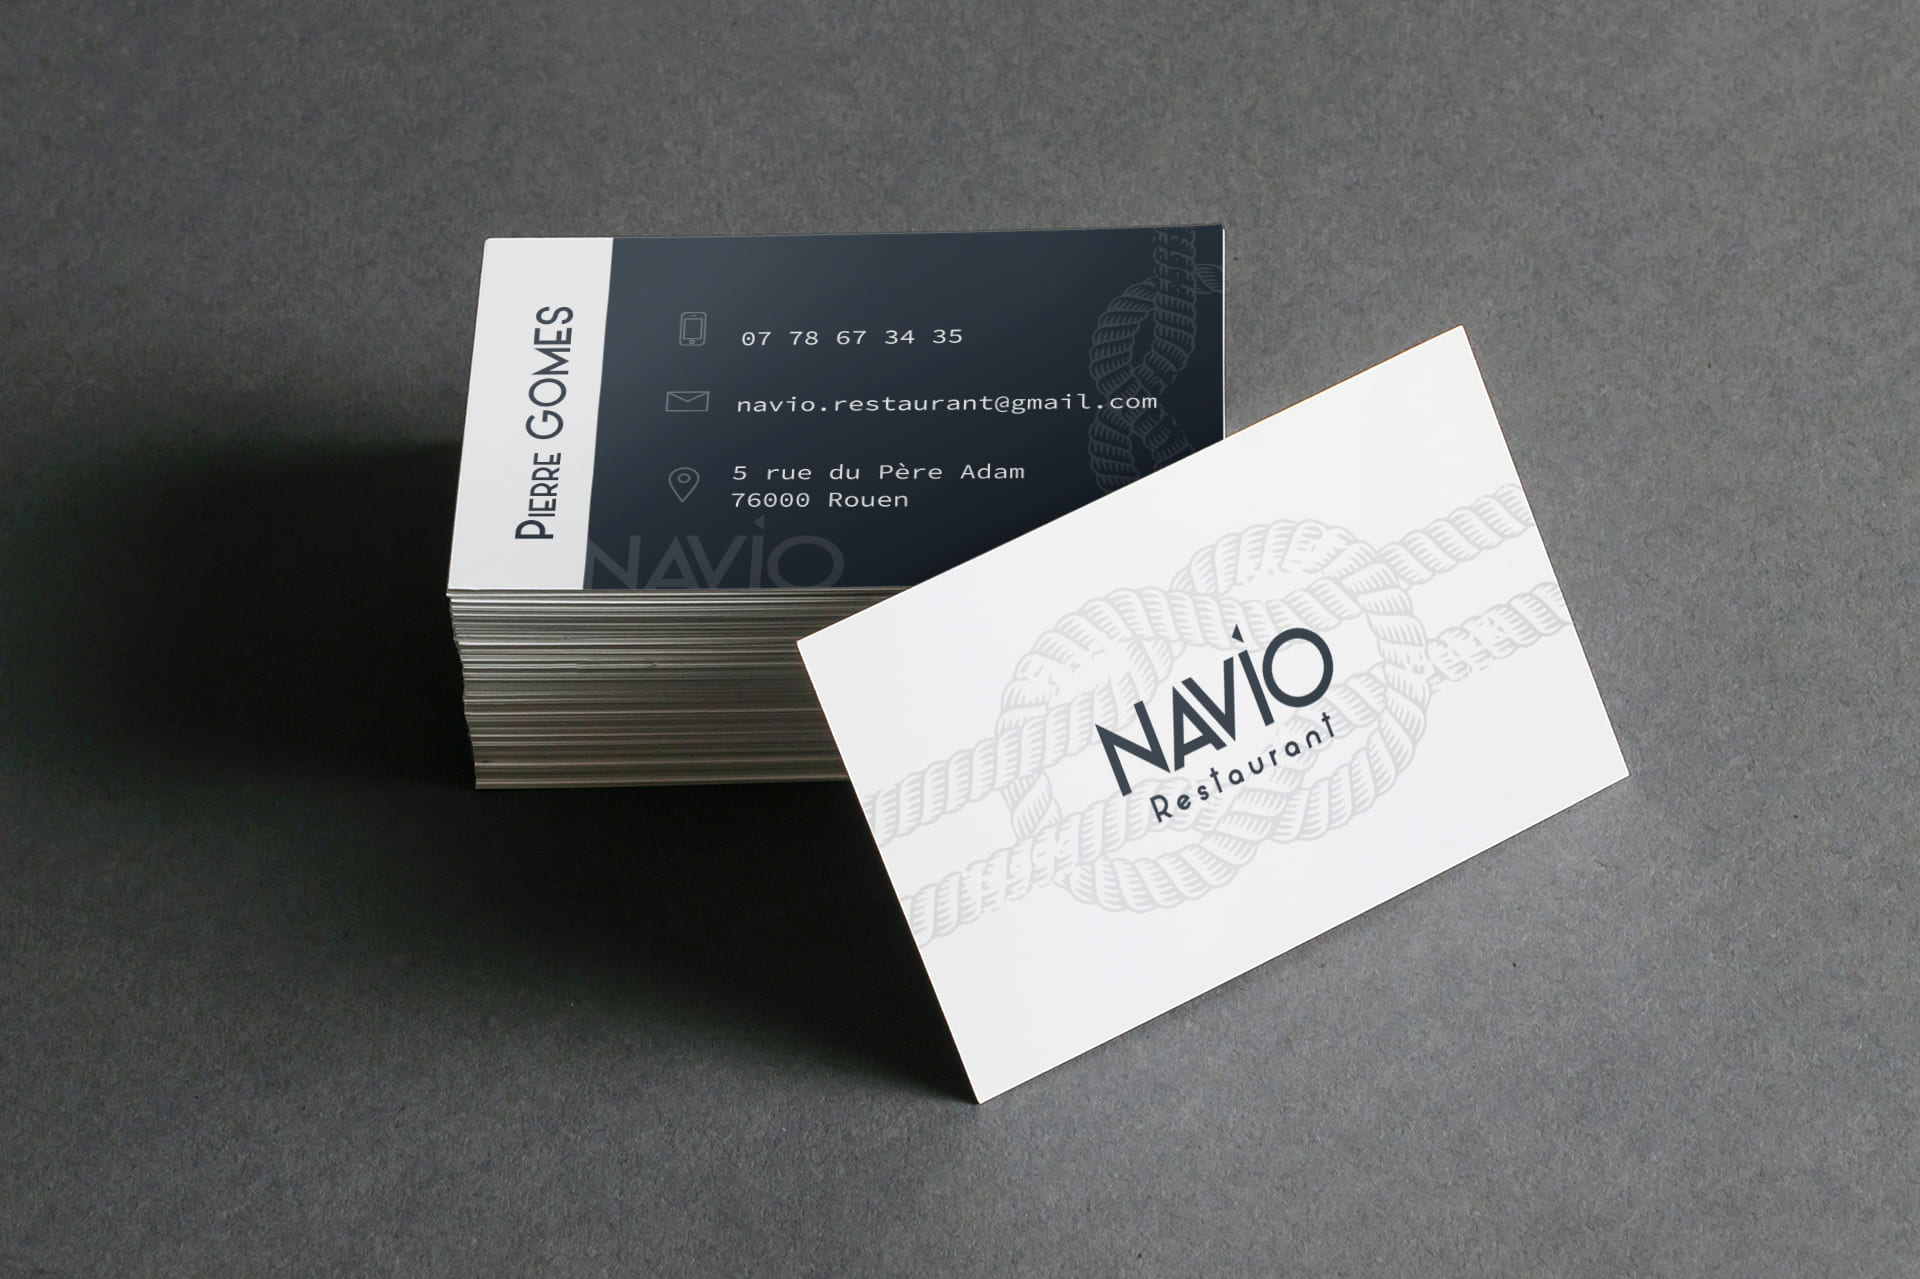 Tas de cartes de visite du restaurant Navio